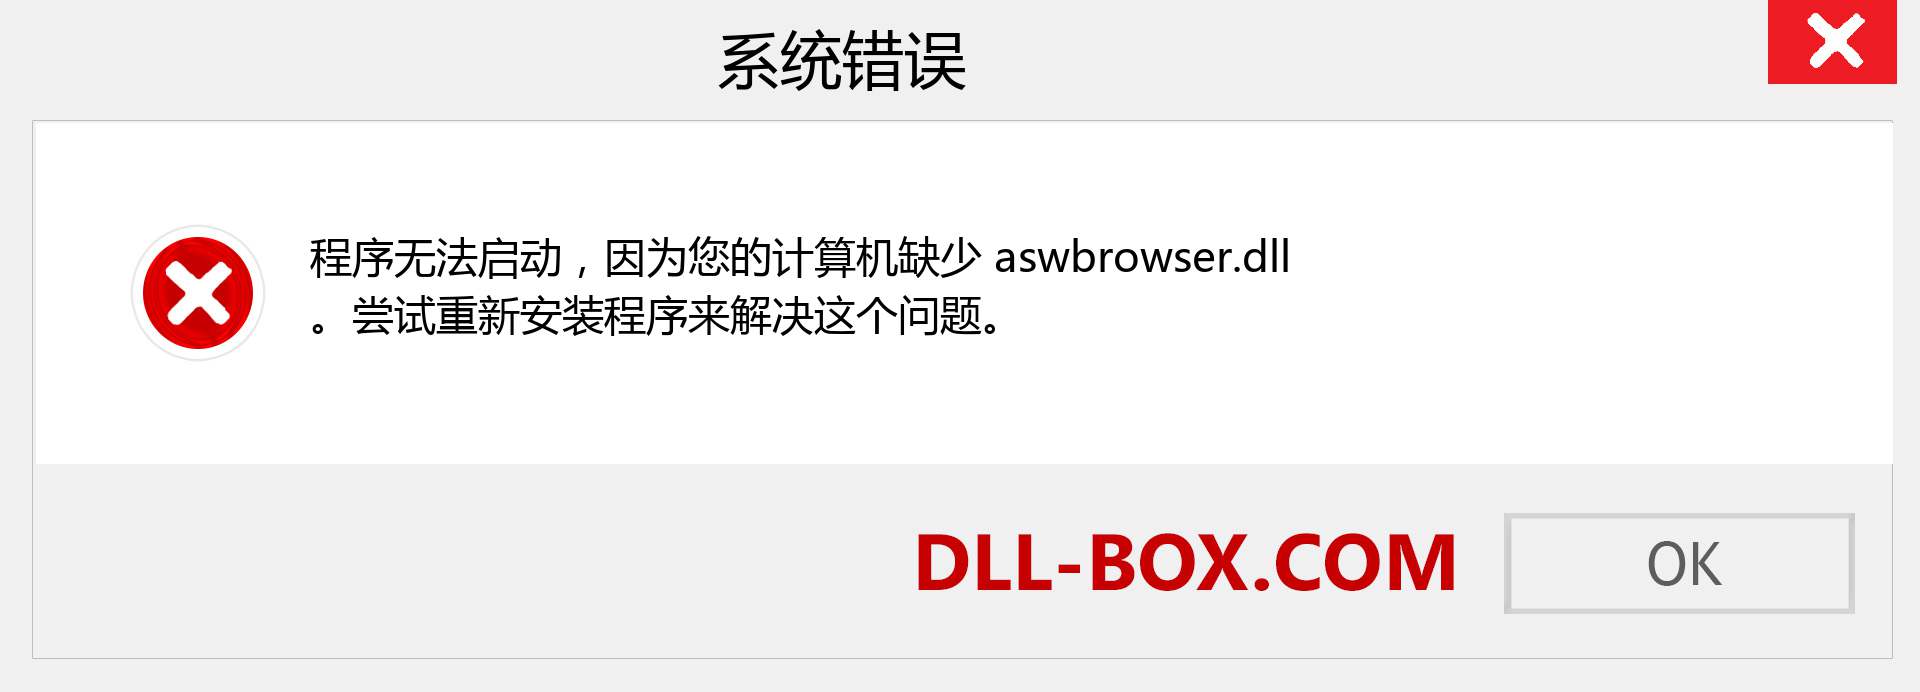 aswbrowser.dll 文件丢失？。 适用于 Windows 7、8、10 的下载 - 修复 Windows、照片、图像上的 aswbrowser dll 丢失错误